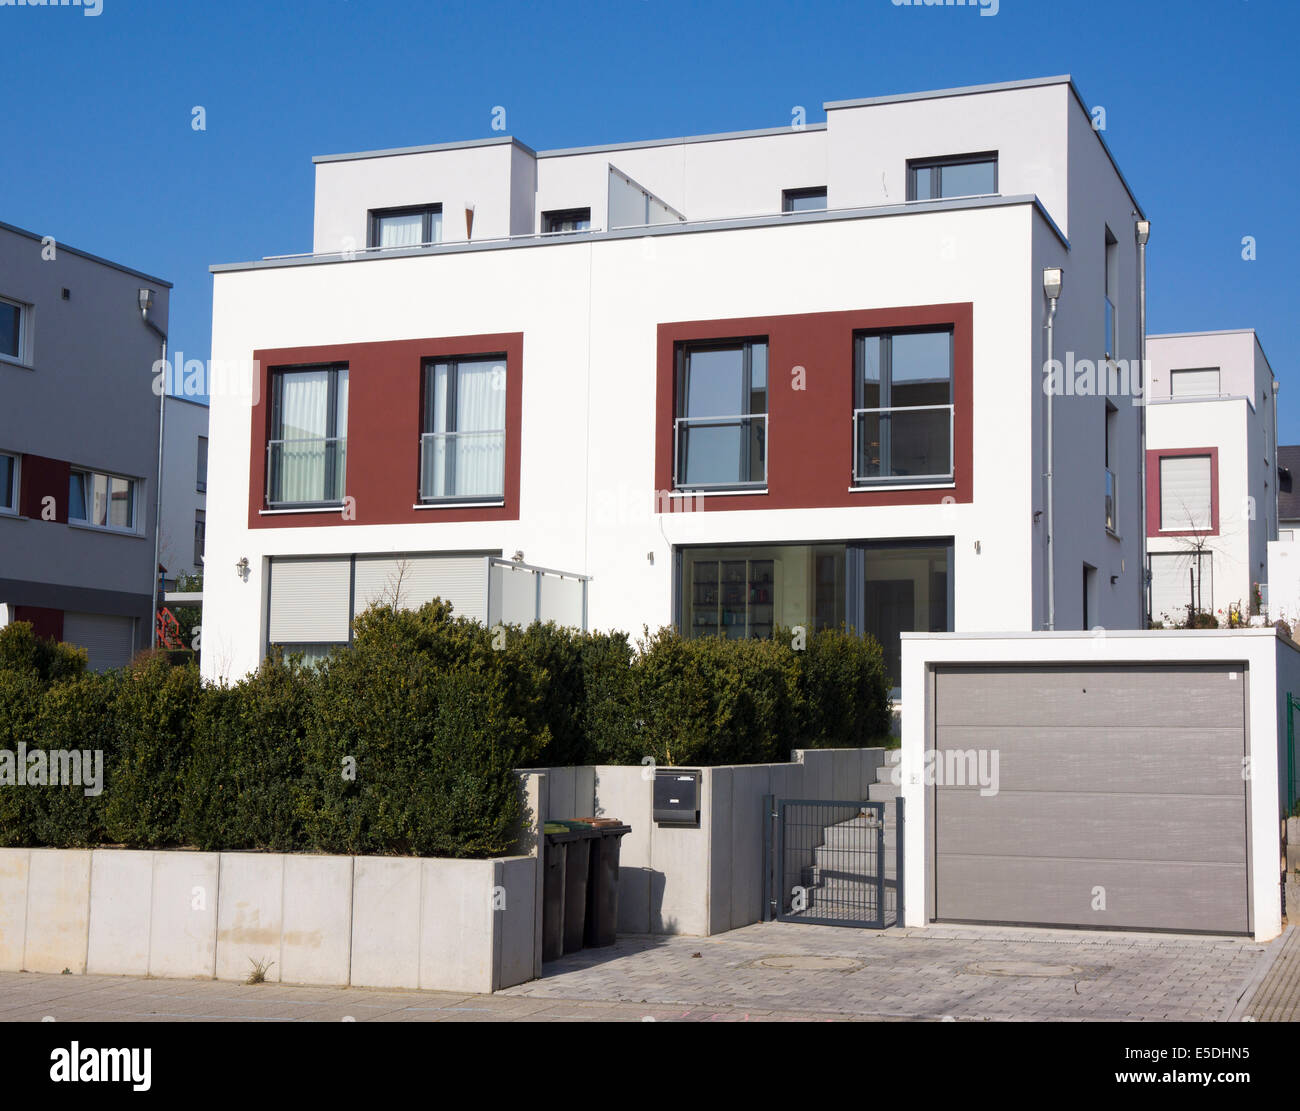 Deutschland, Hessen, Frankfurt-Riedberg, Blick auf Twin-Haus mit garage  Stockfotografie - Alamy